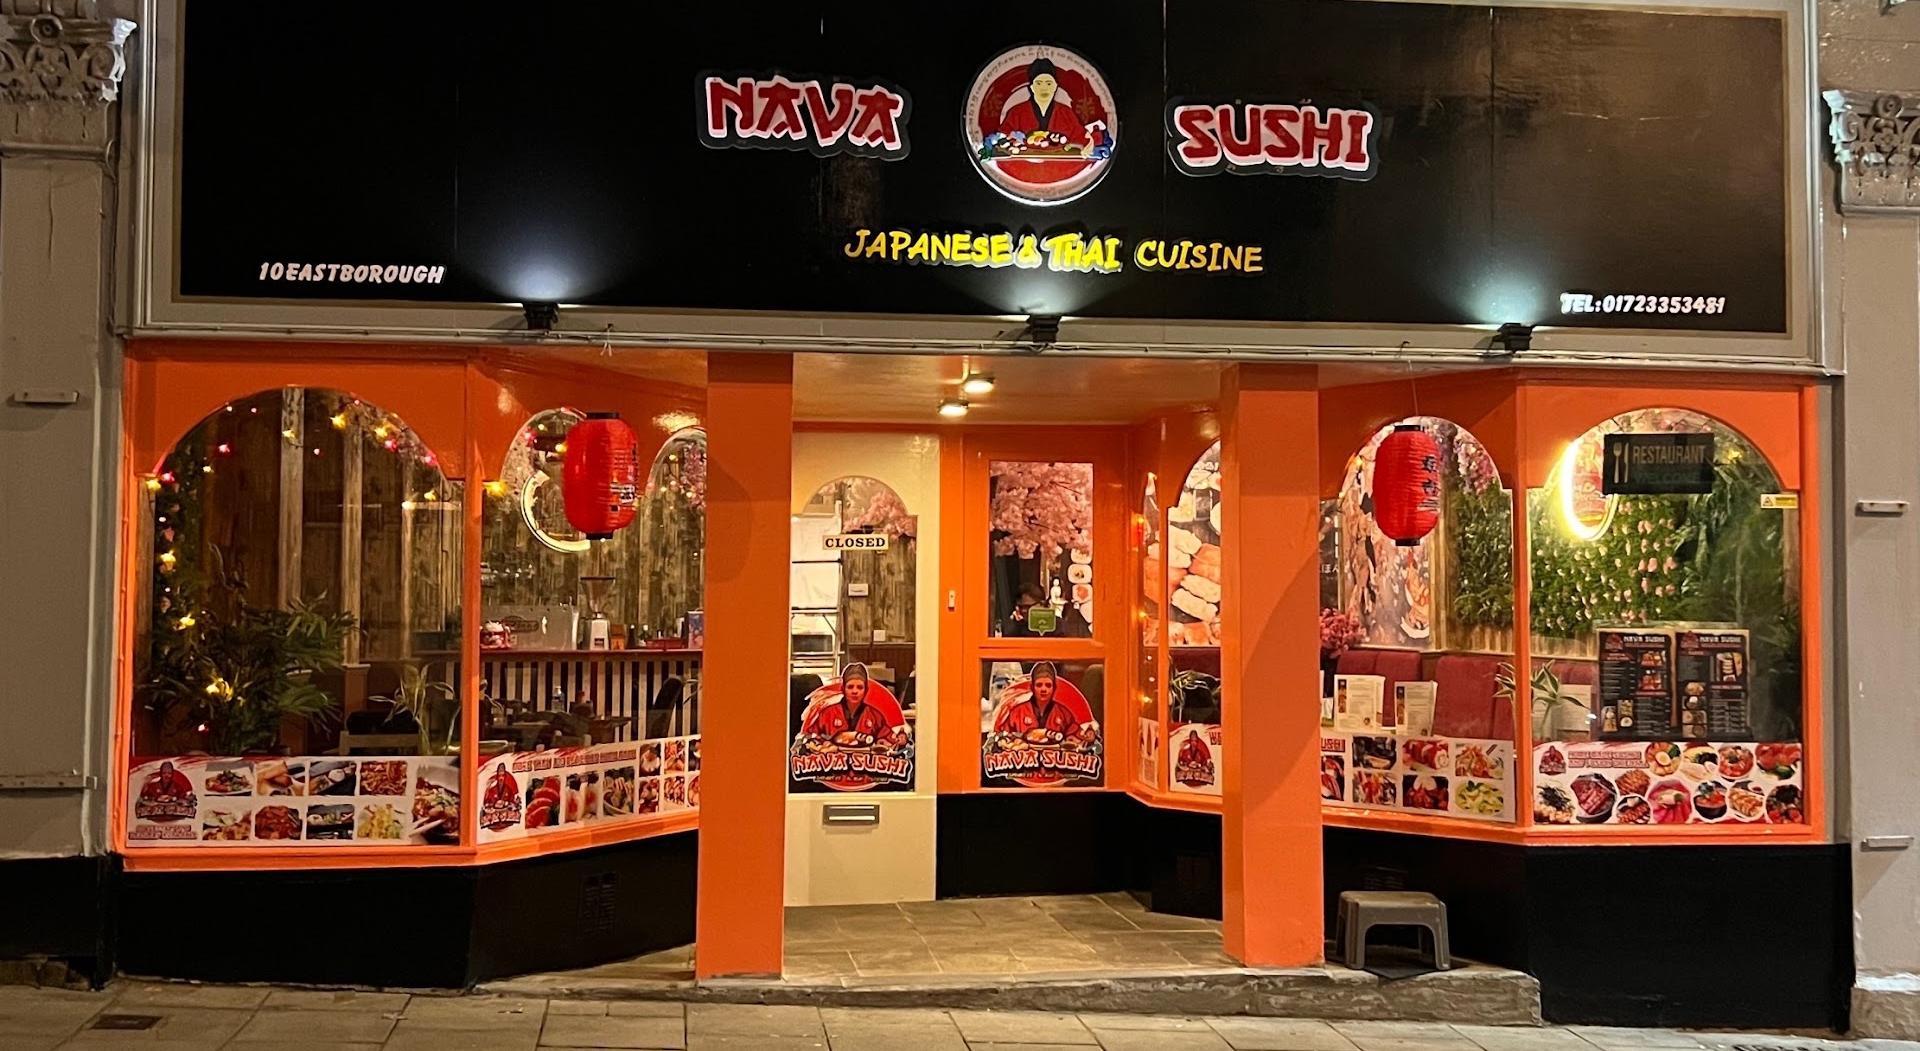 نافا سوشي المأكولات اليابانية والتايلاندية